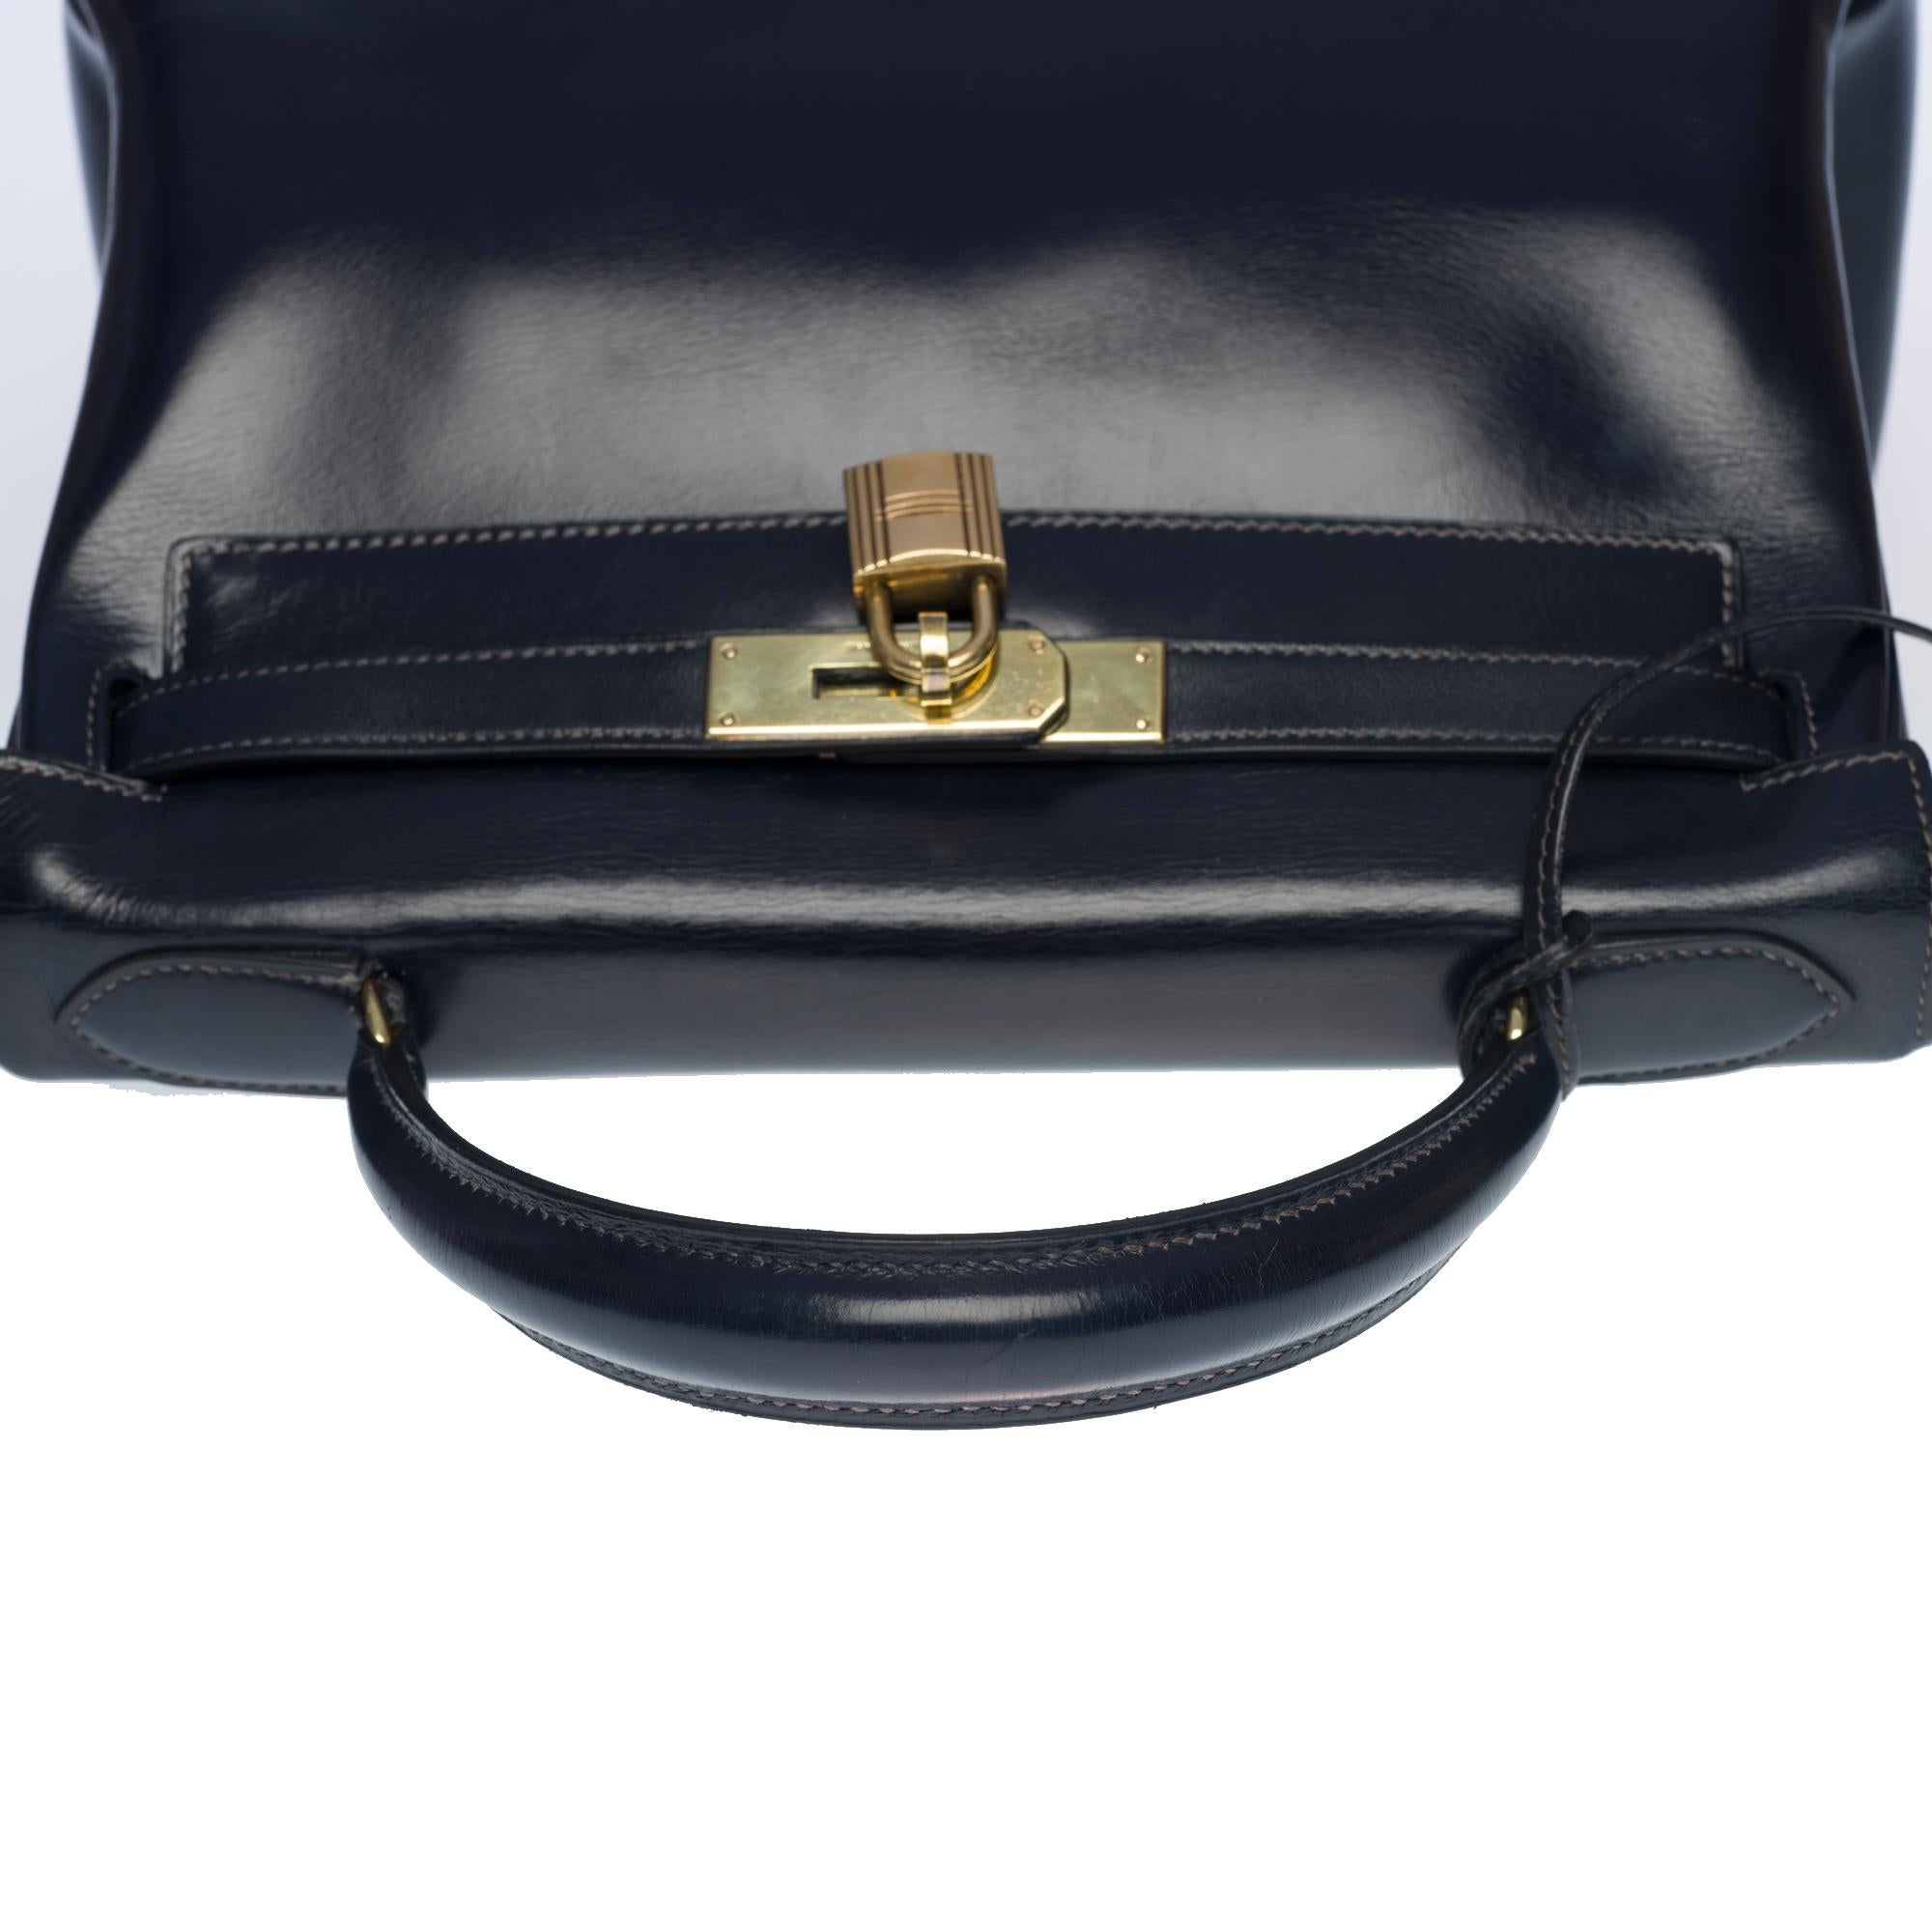 Women's Amazing Hermes Kelly 28 retourne handbag strap in Navy blue box calfskin, GHW